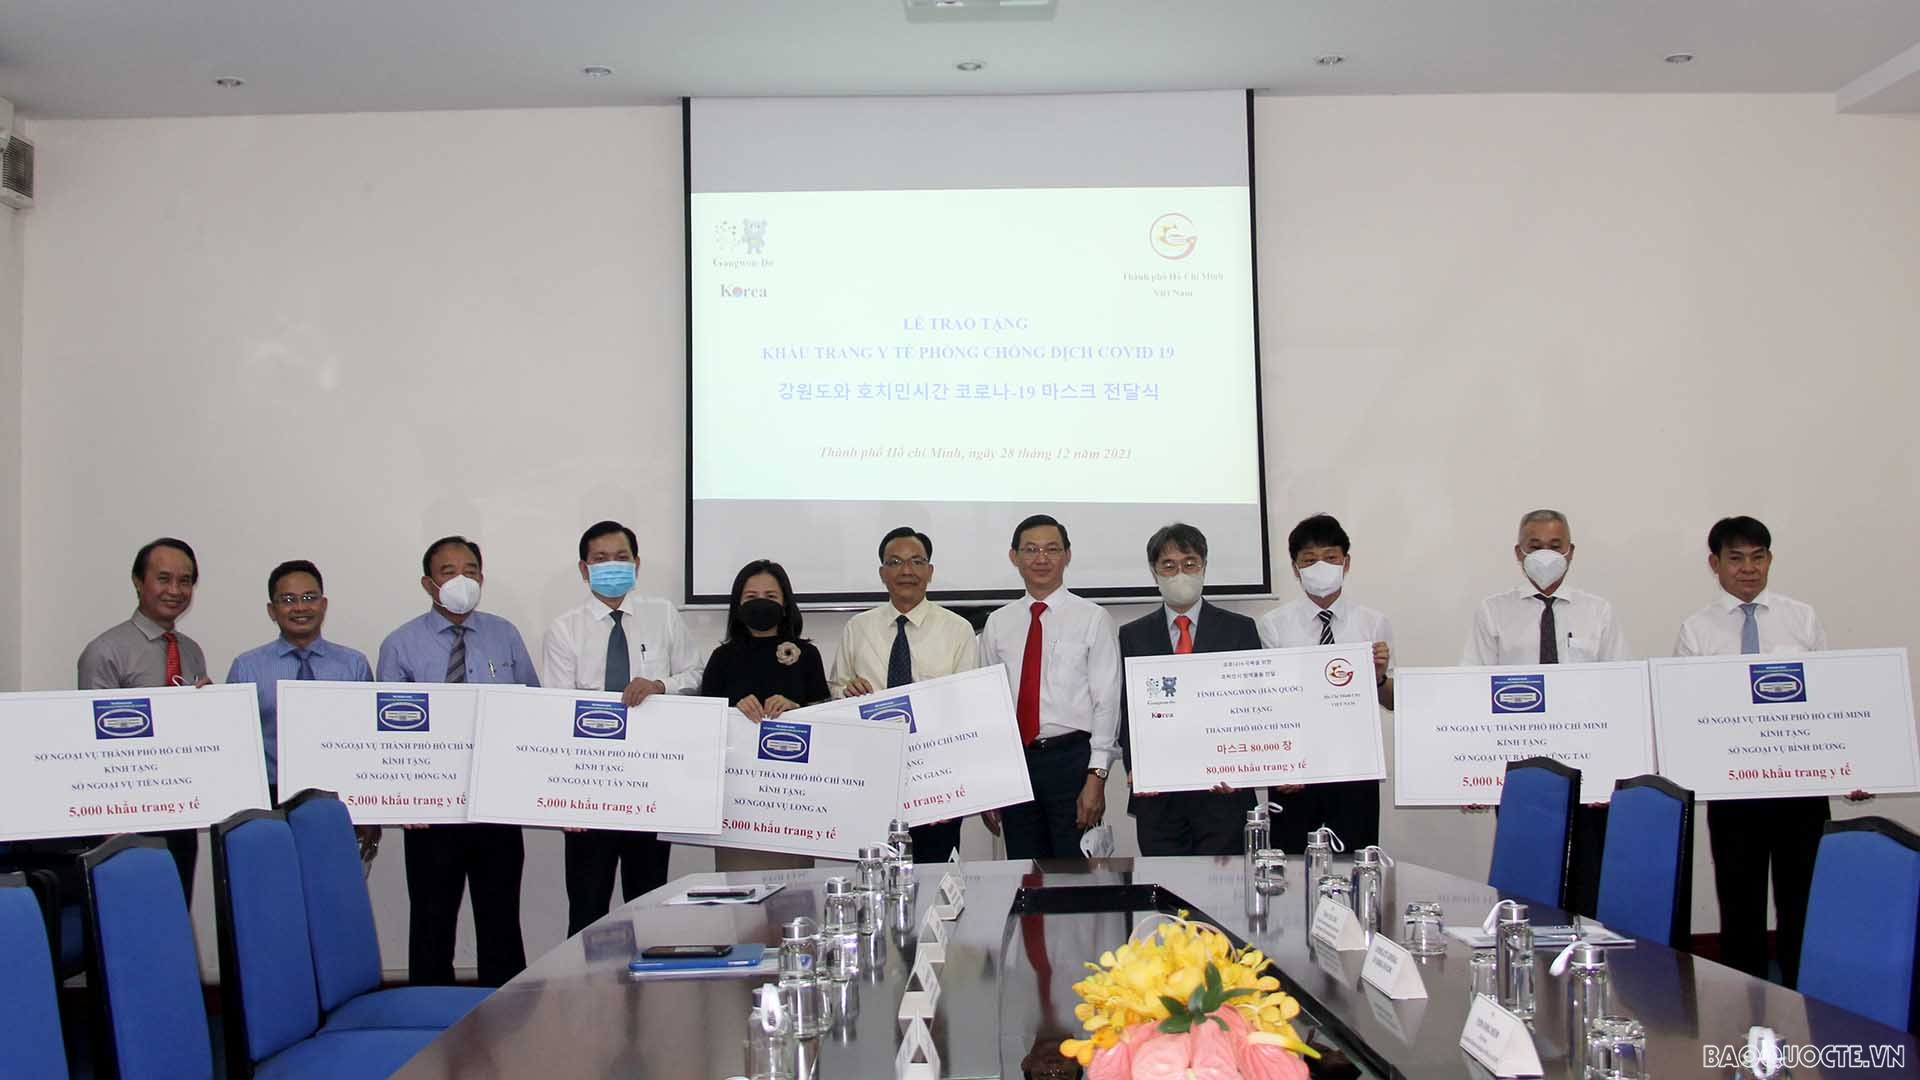 Sở Ngoại vụ TP. Hồ Chí Minh trao tặng đến 07 Sở Ngoại vụ các tỉnh thành phía Nam số lượng 35.000 khẩu trang y tế trong tổng số 80.000 khẩu trang y tế mà tỉnh Gangwon trao tặng cho TP. Hồ Chí Minh.